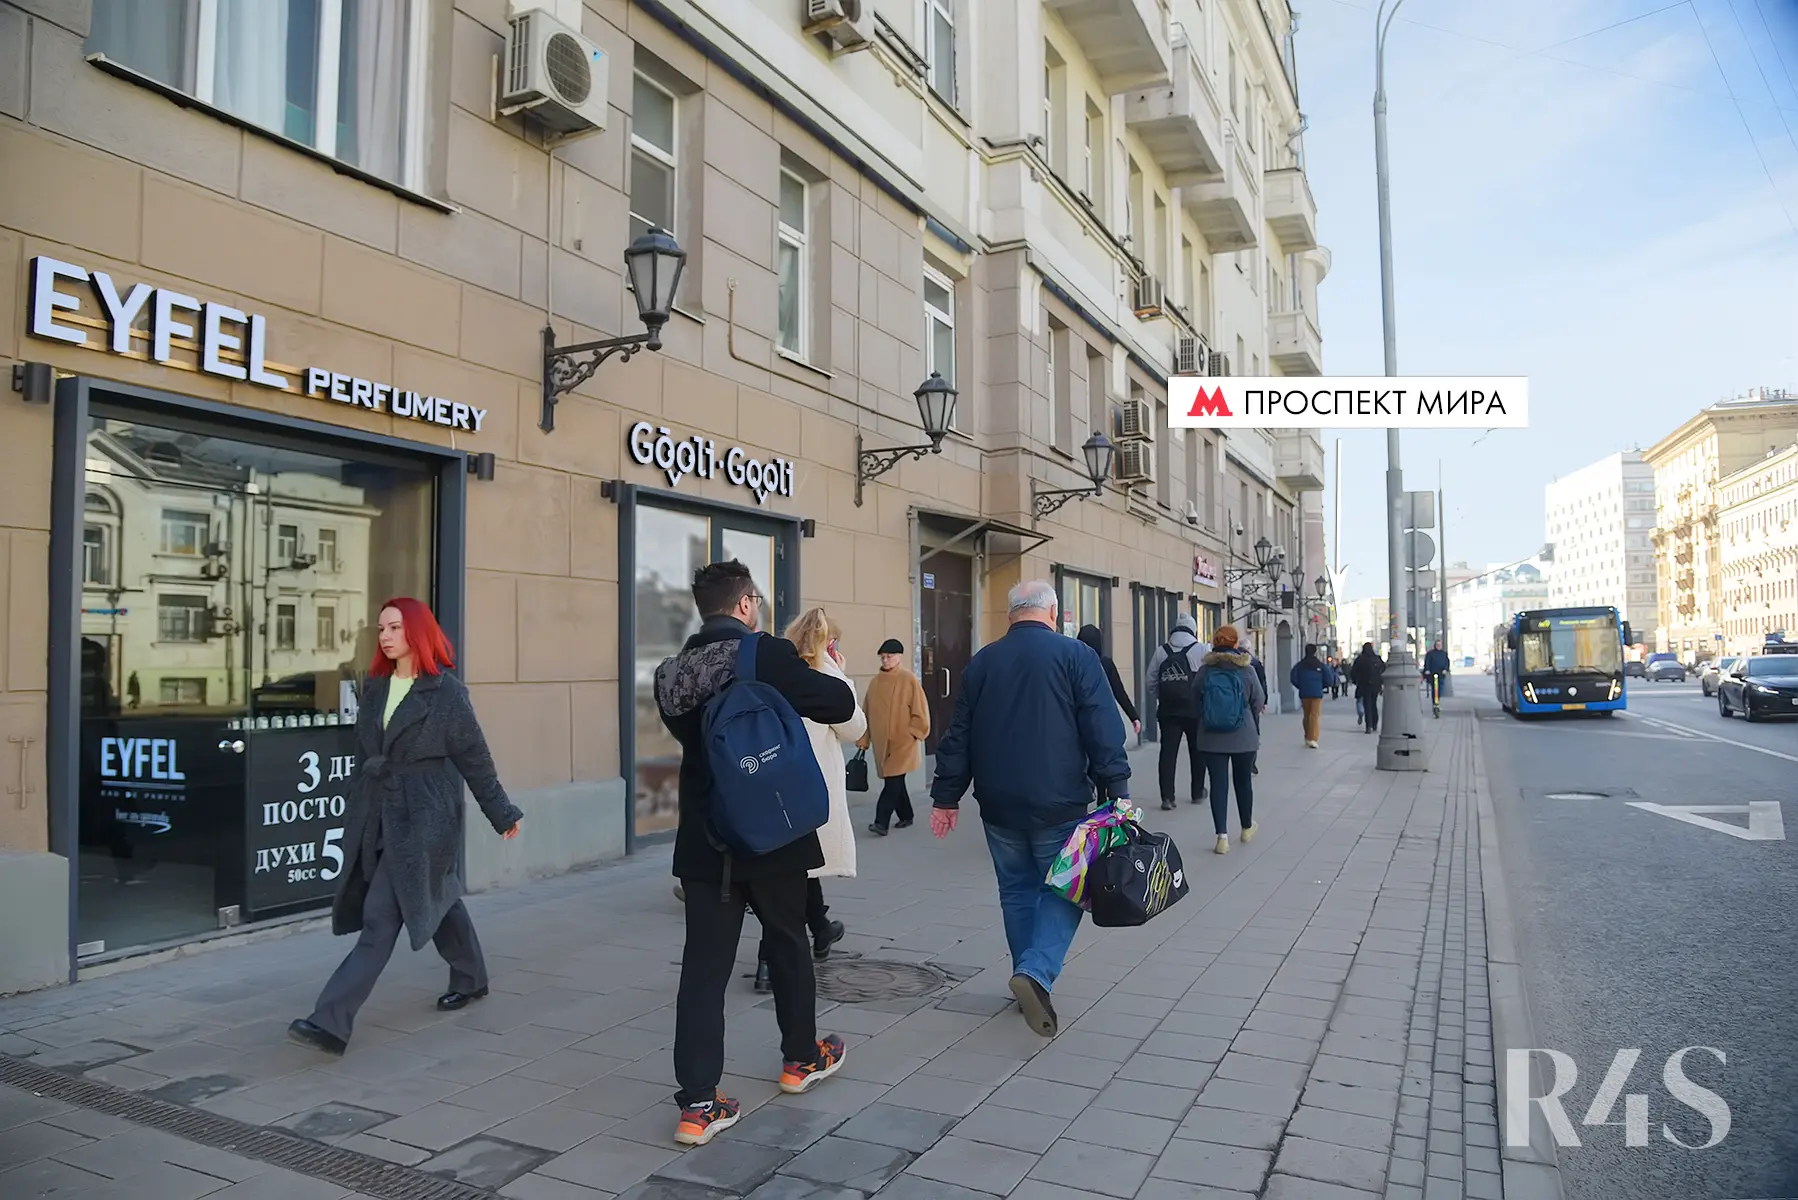 Продажа готового арендного бизнеса площадью 89.4 м2 в Москве: проспект Мира, 44 R4S | Realty4Sale